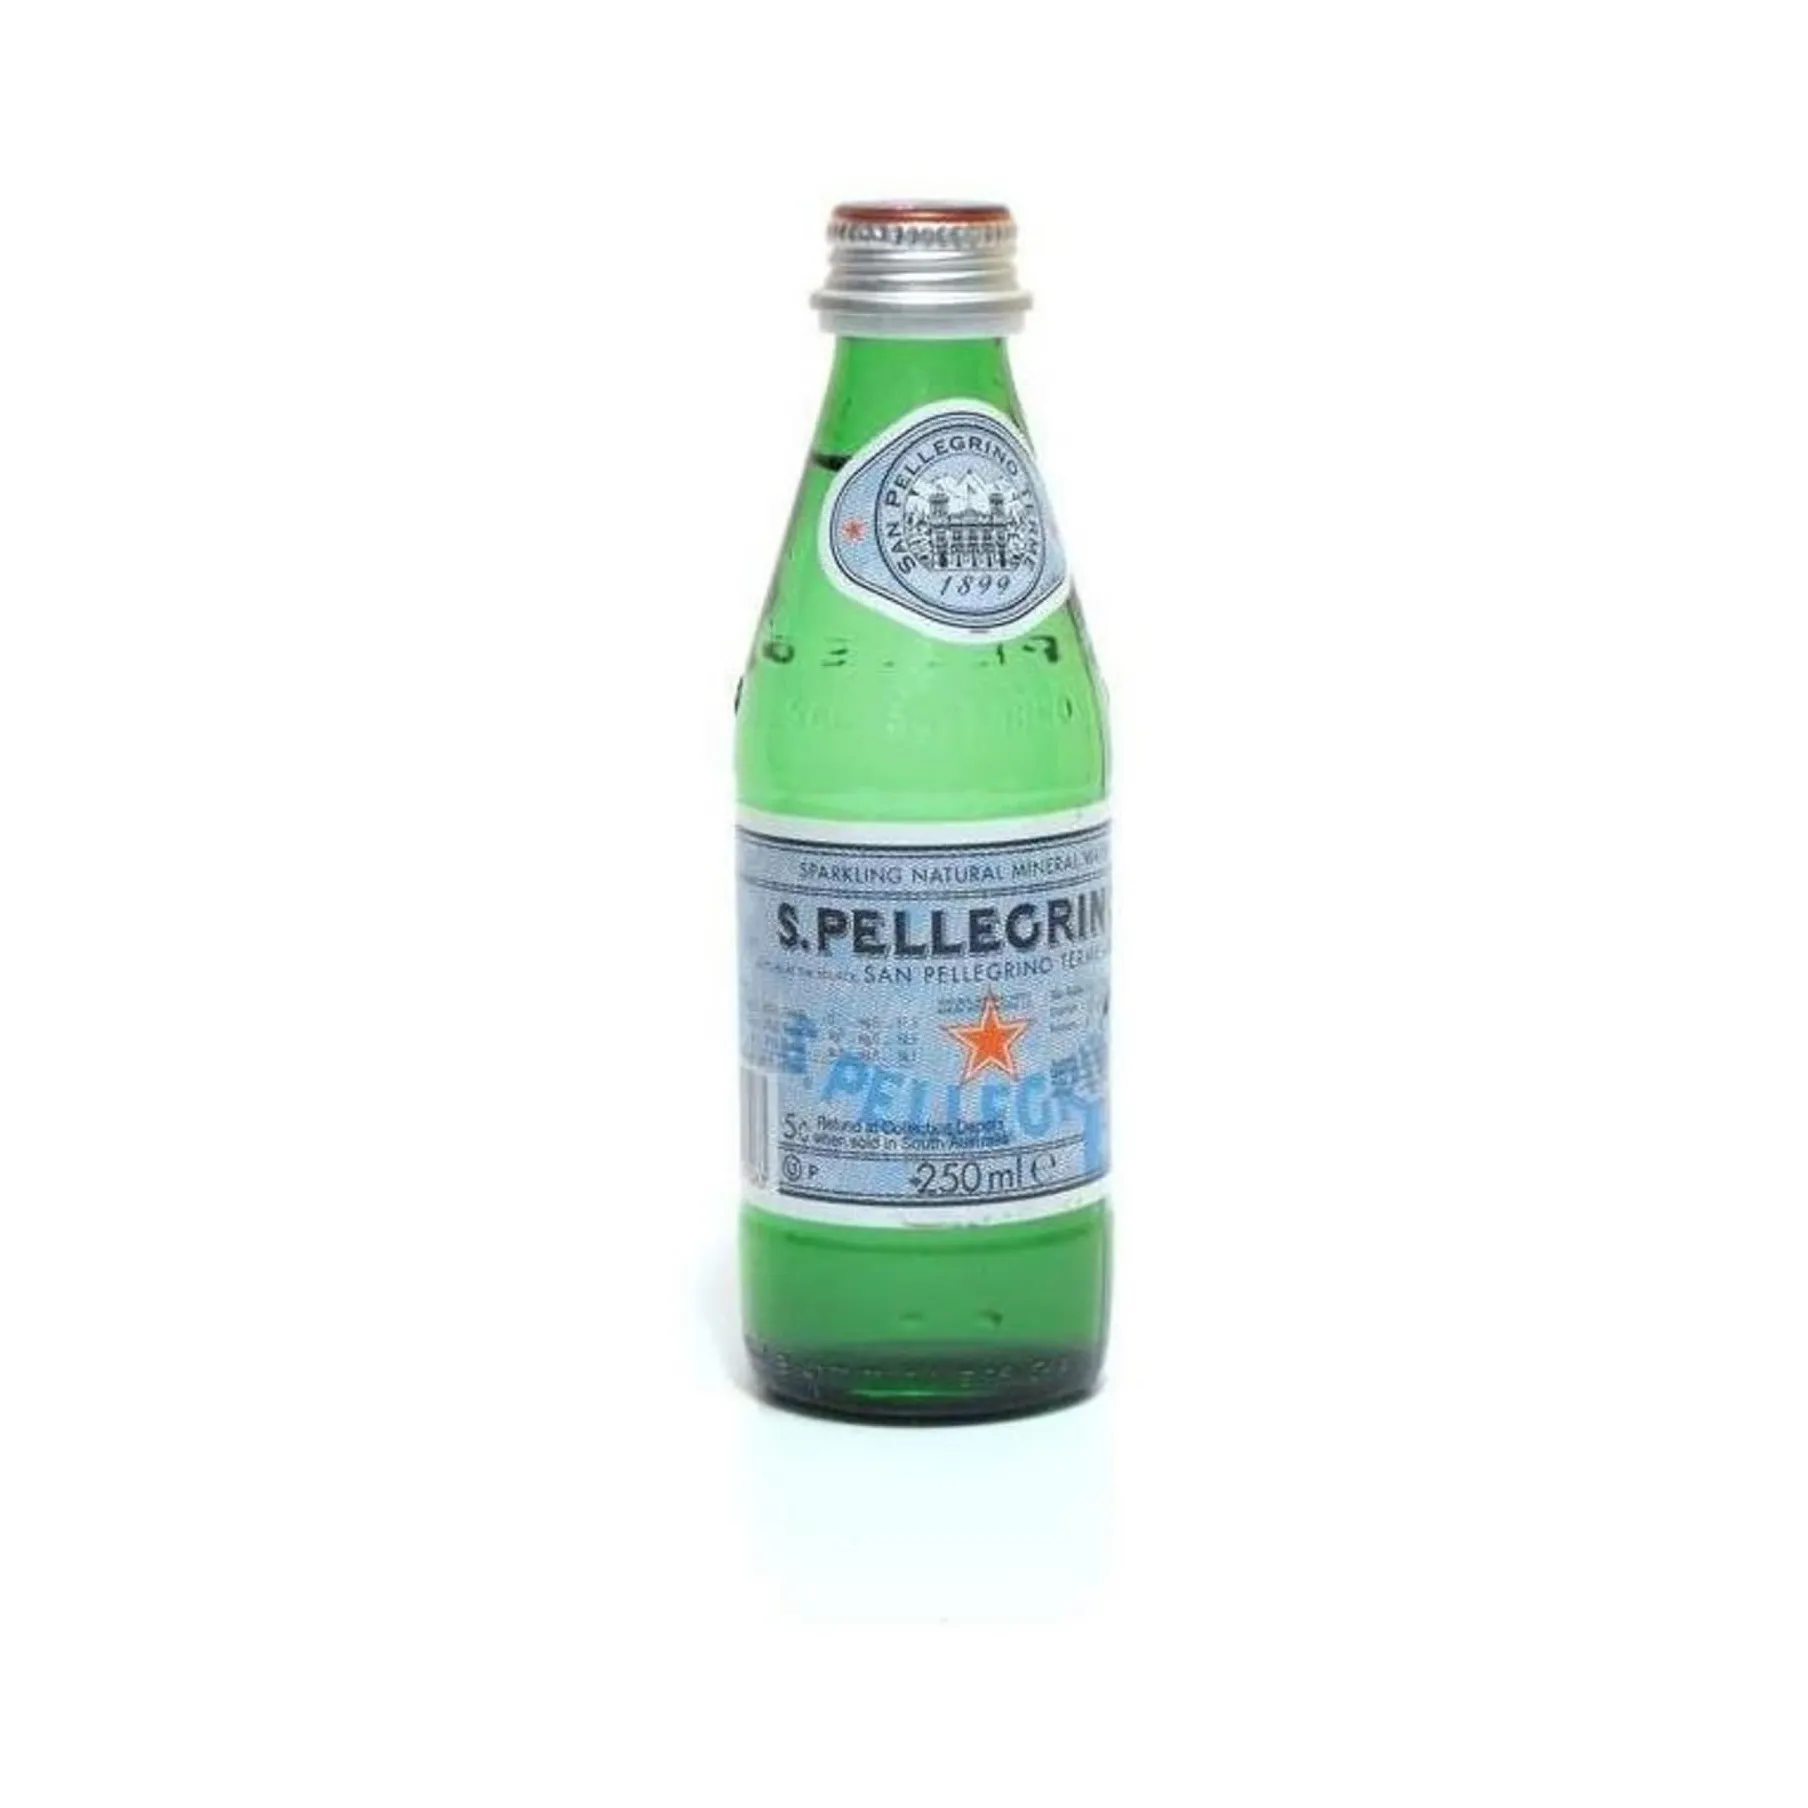 Mua S. pellegrino nước khoáng thiên nhiên lấp lánh, 8.45 floz (gói 6) chai với giá tốt nhất